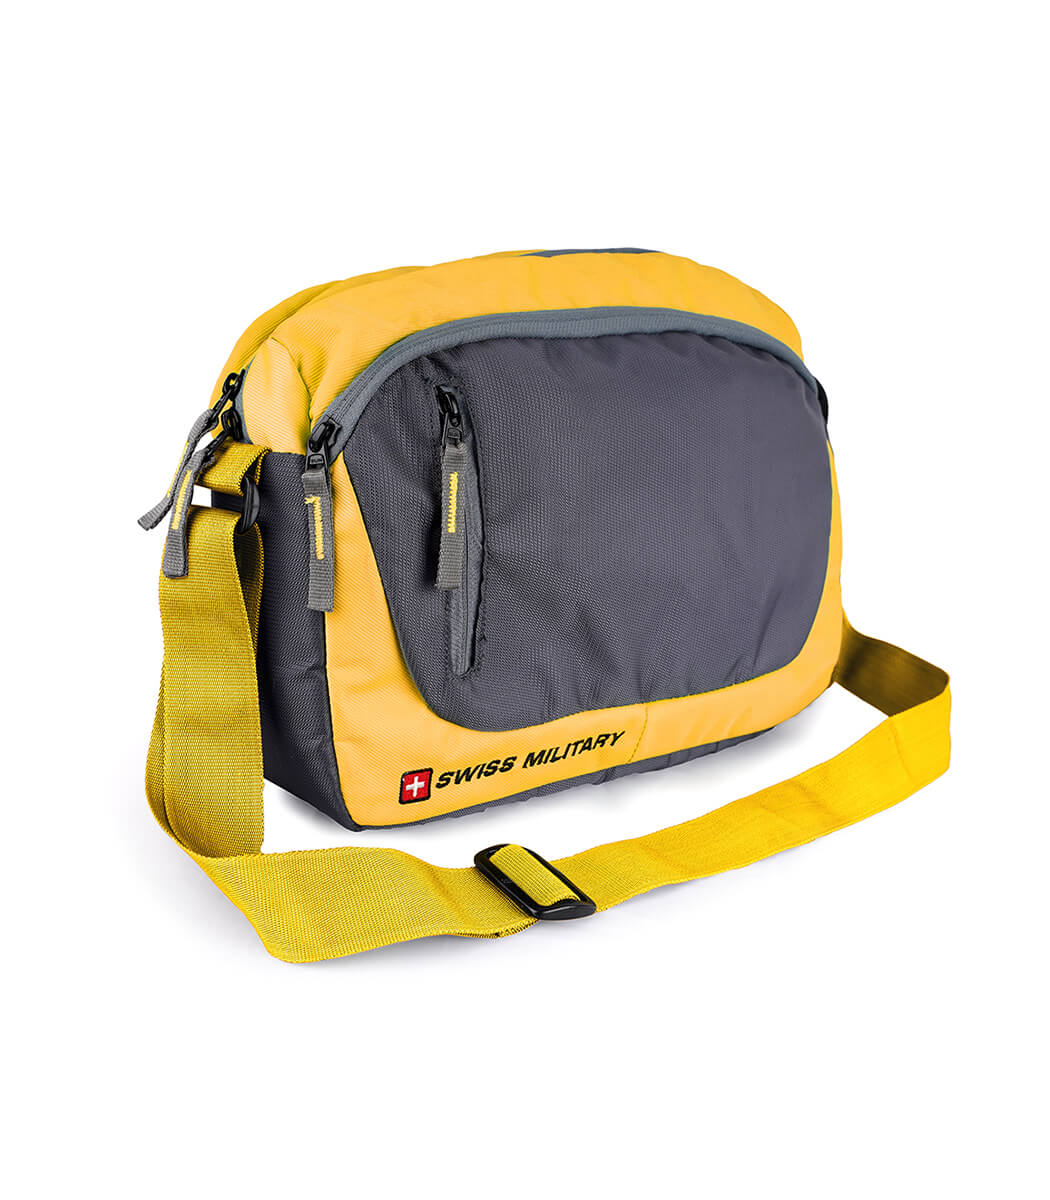 Sling bag, Briefcase, Laptop backpack, Leather backpack, backpack, PU bag, , Office bag